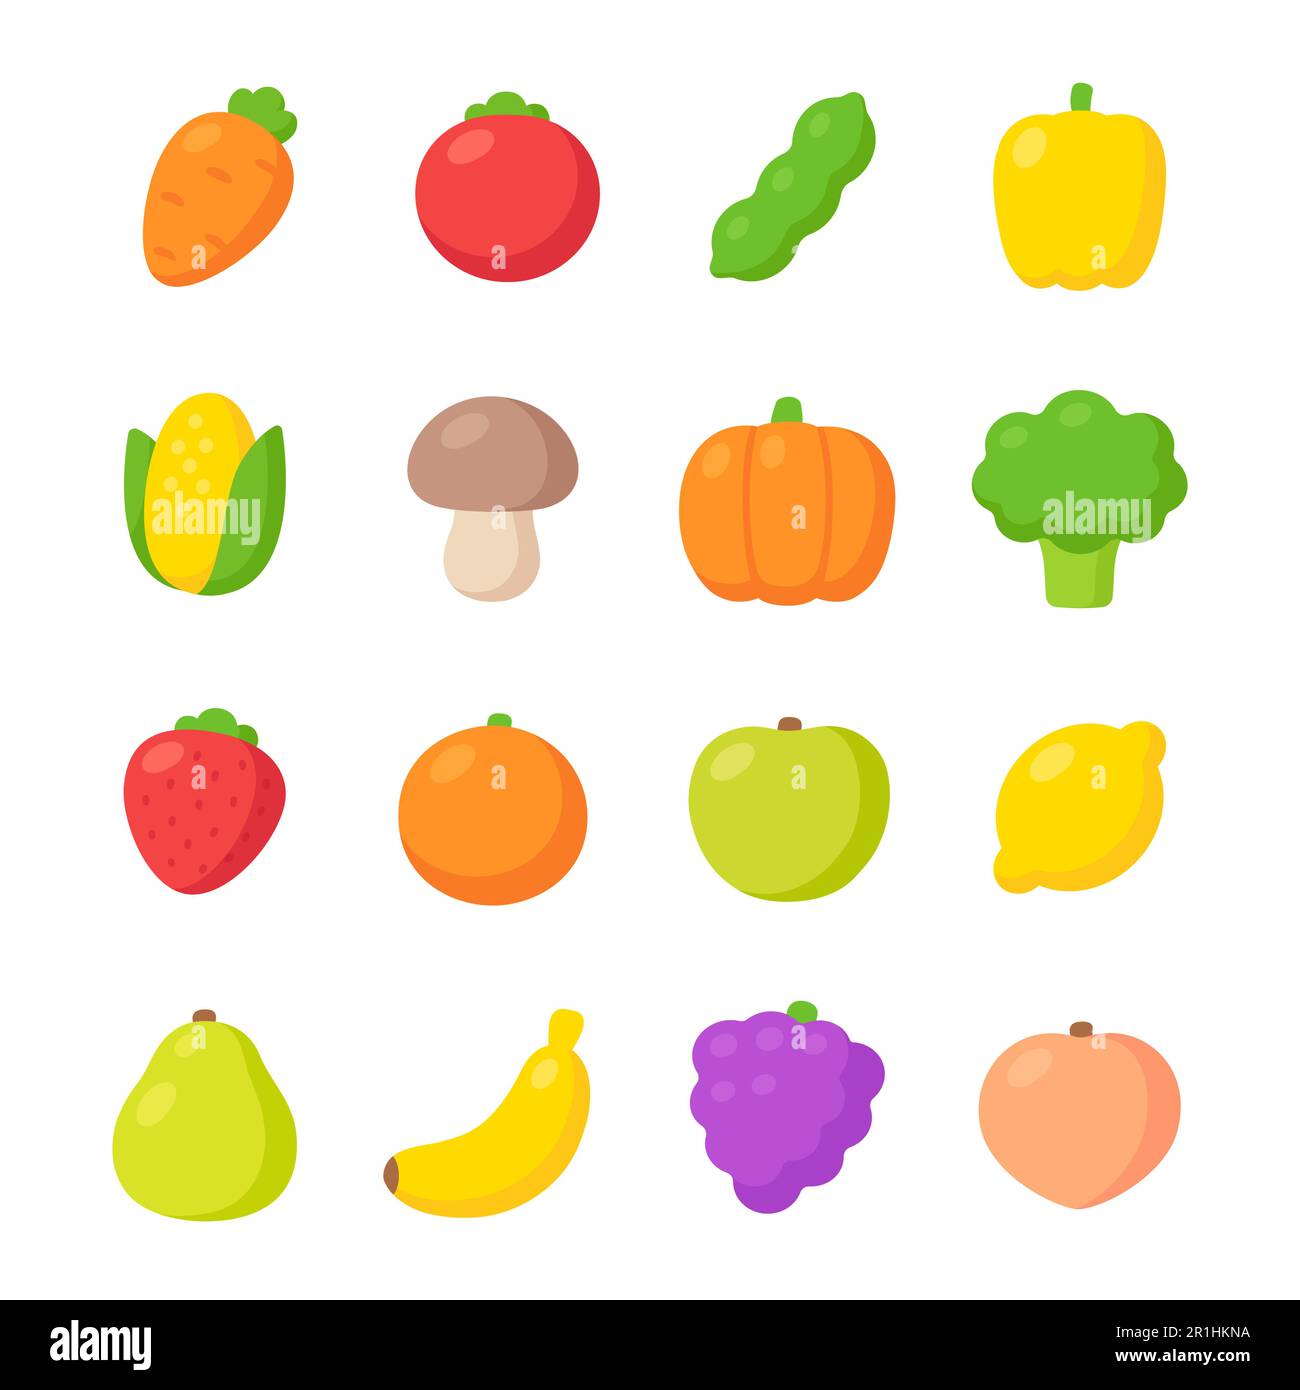 Cartoon icone di frutta e verdura disegnate a mano. Disegni colorati e semplici, set di illustrazioni vettoriali. Stile piatto senza rivestimento. Illustrazione Vettoriale